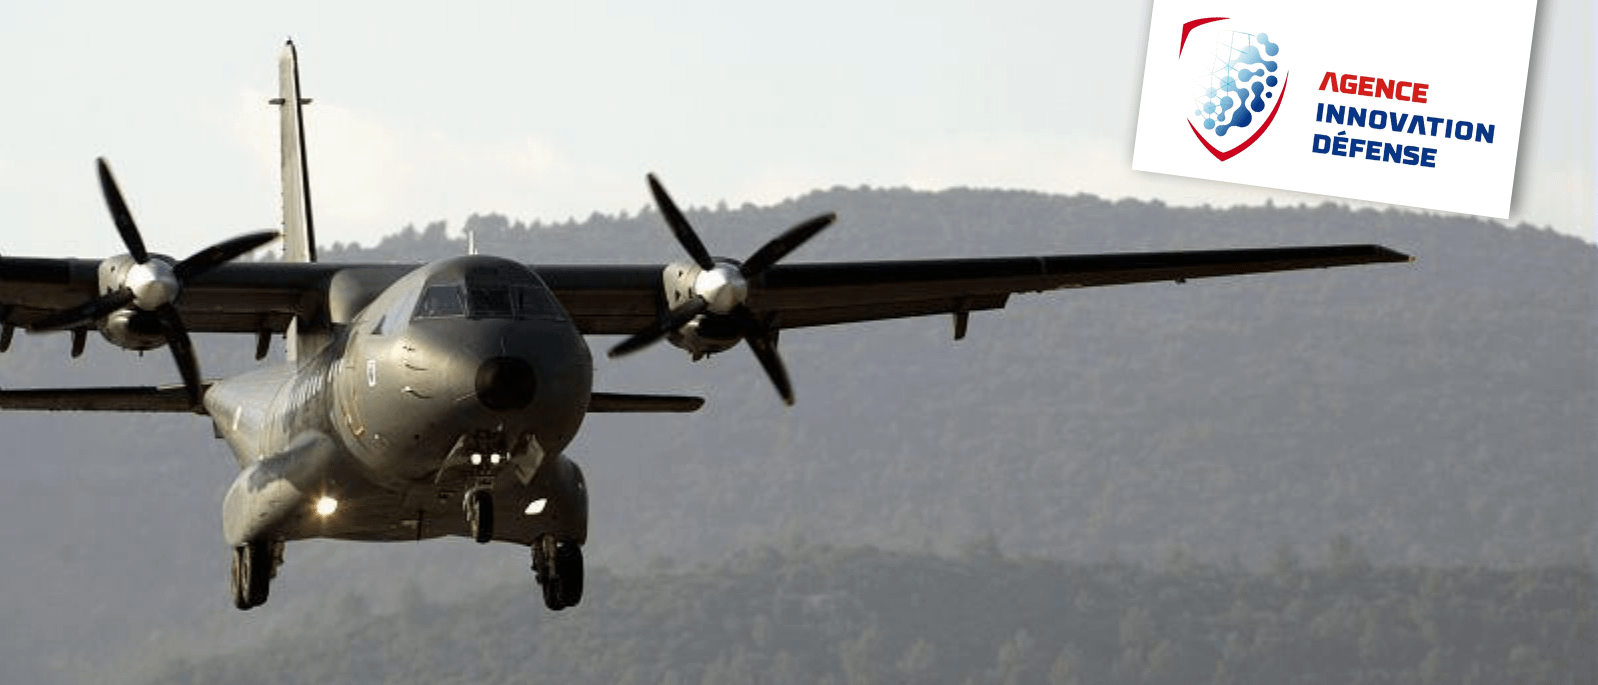 L'armée et le ministére de la défense reconnait que corsopatch Aircraft est une solution innovante